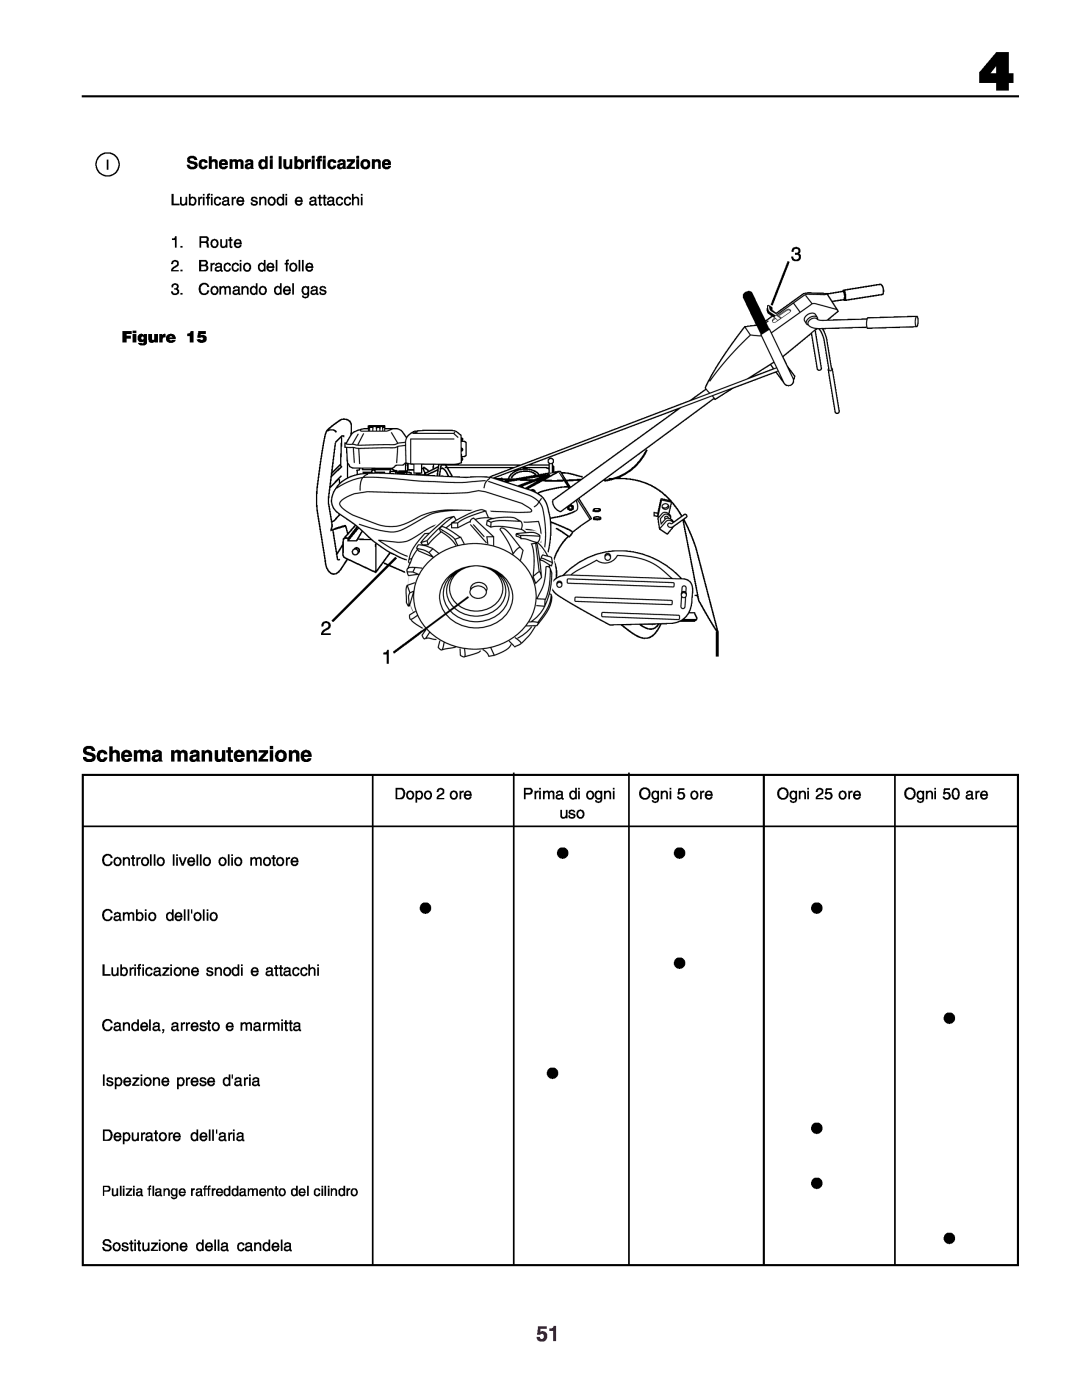 Husqvarna crt51 instruction manual Schema manutenzione, ISchema di lubrificazione 